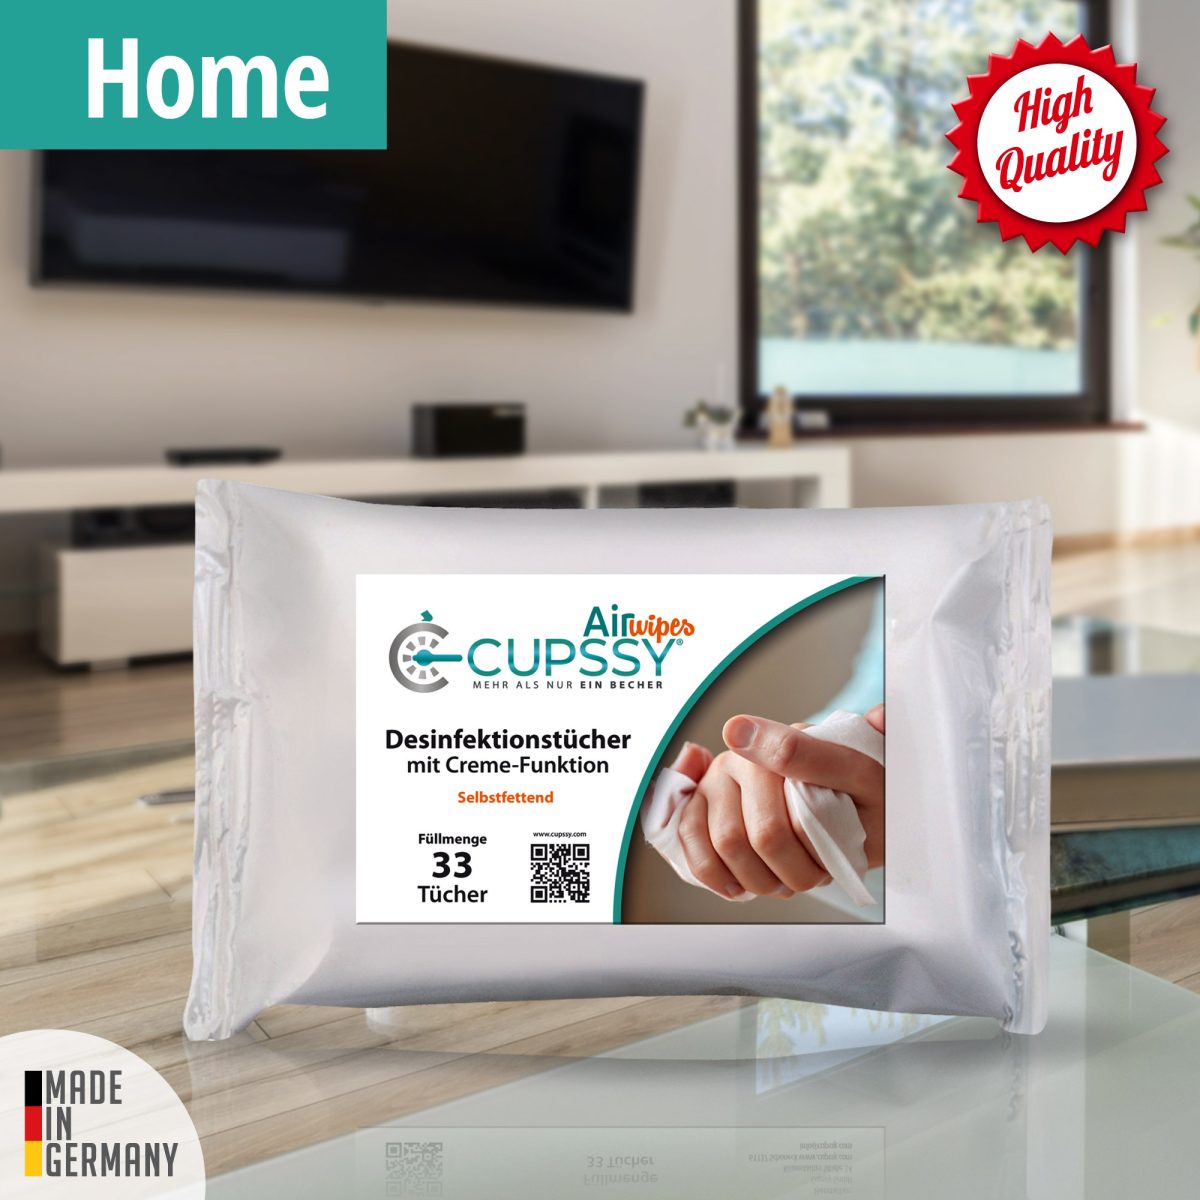 Cupssy AirWipes Desinfektionstücher mit Creme Funktion Zu Hause